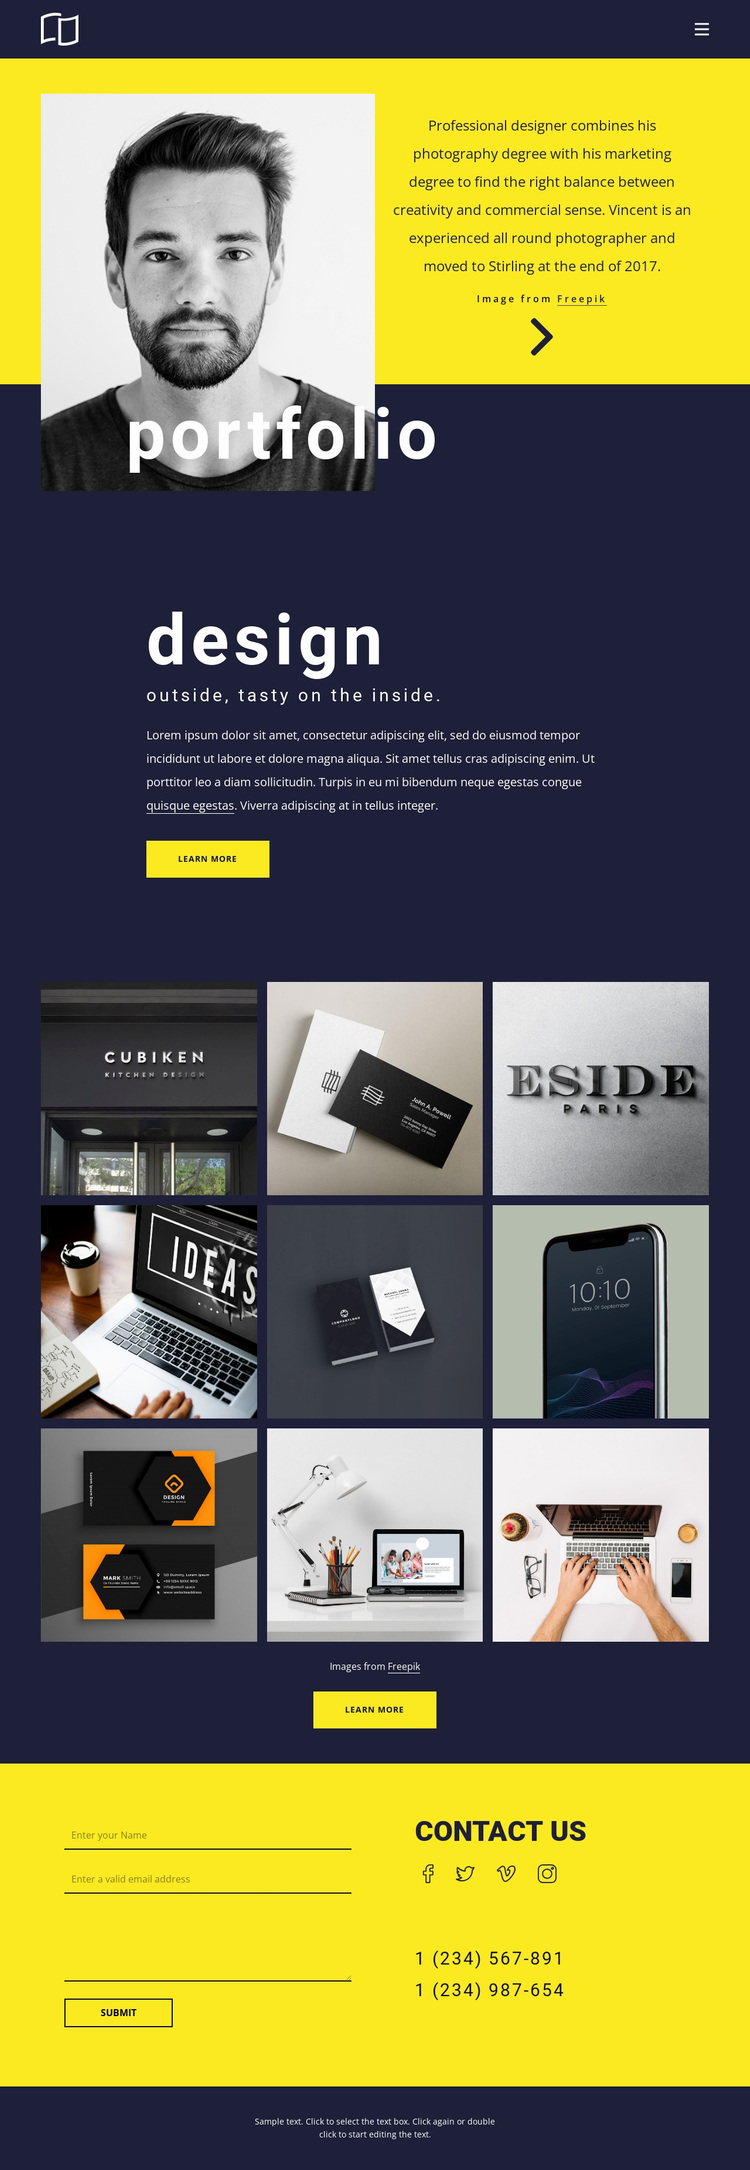 Amazing portfolio Website Design